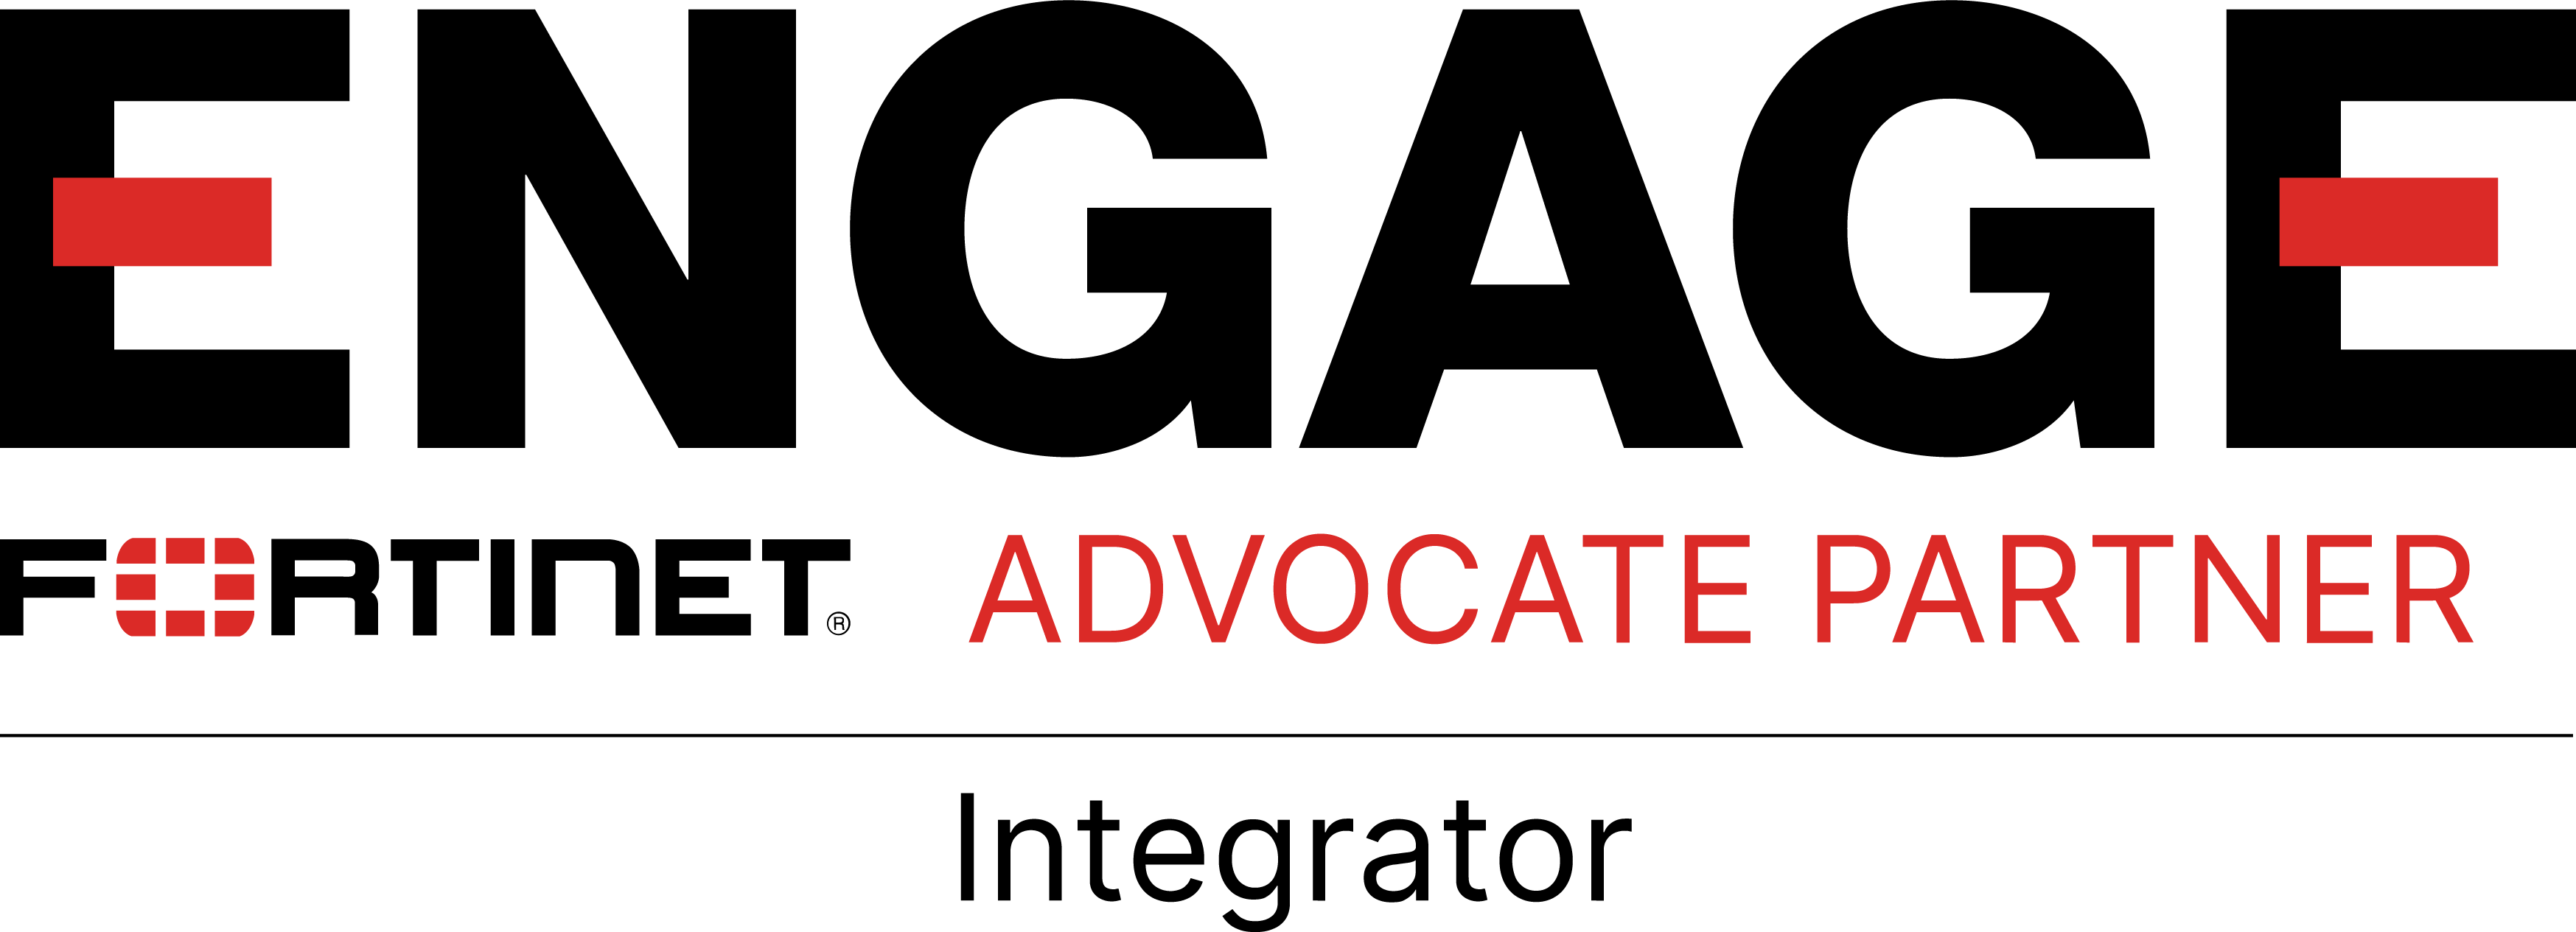 logo-engage-partner-program-advocate